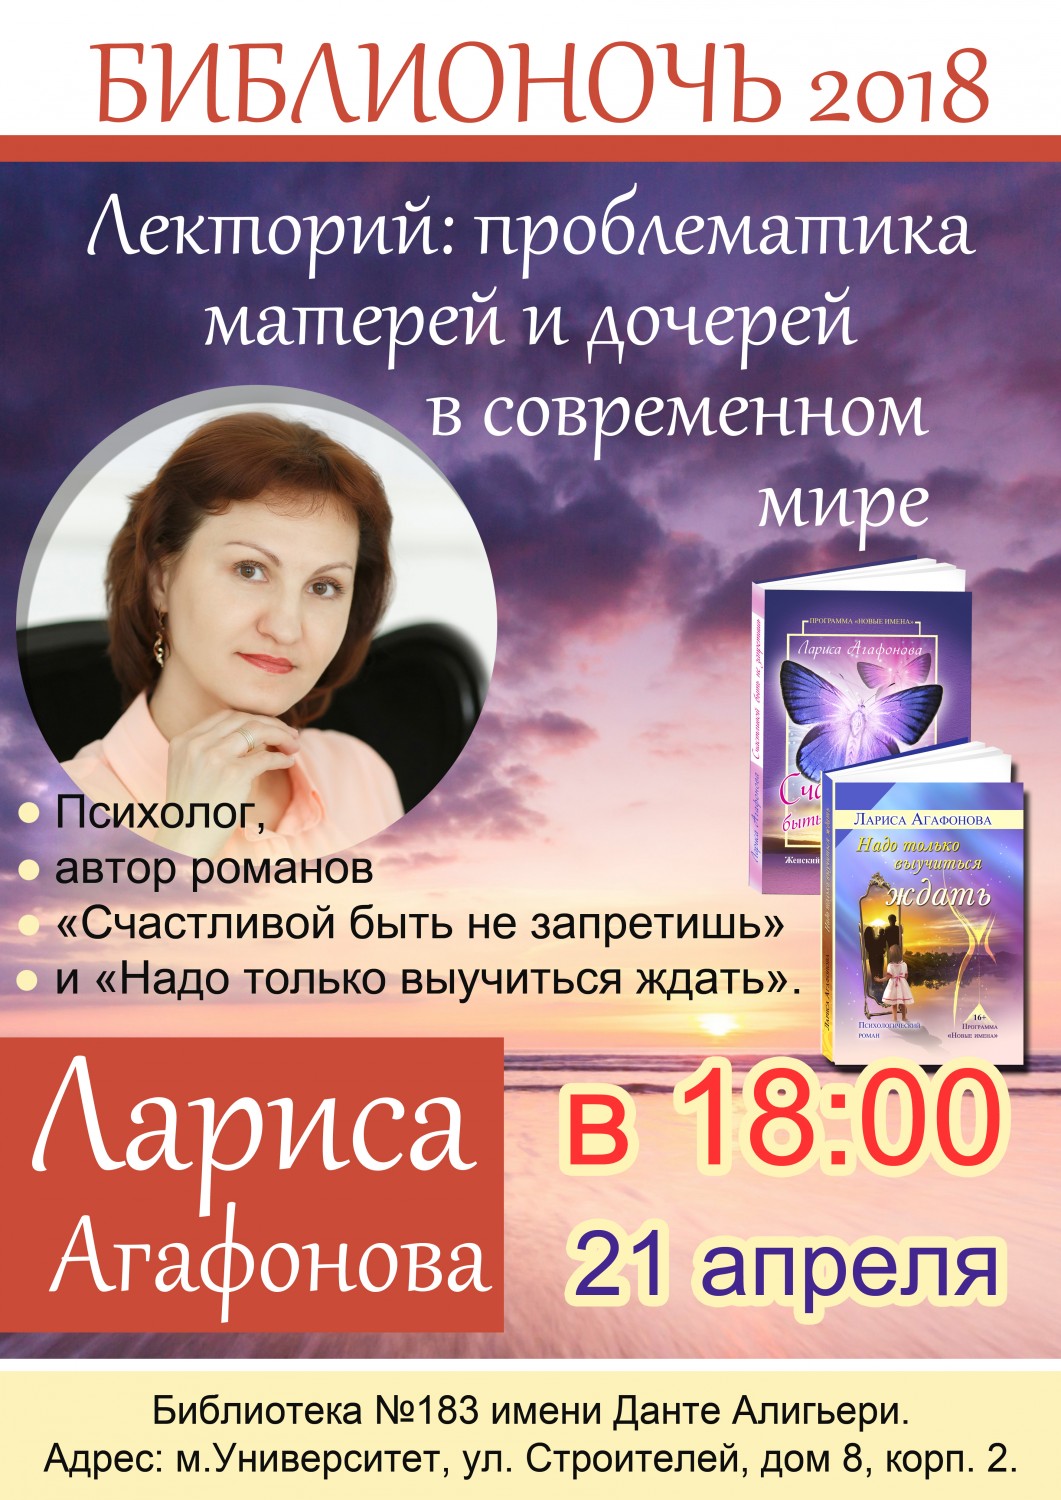 Лариса Агафонова примет участие в библионочи